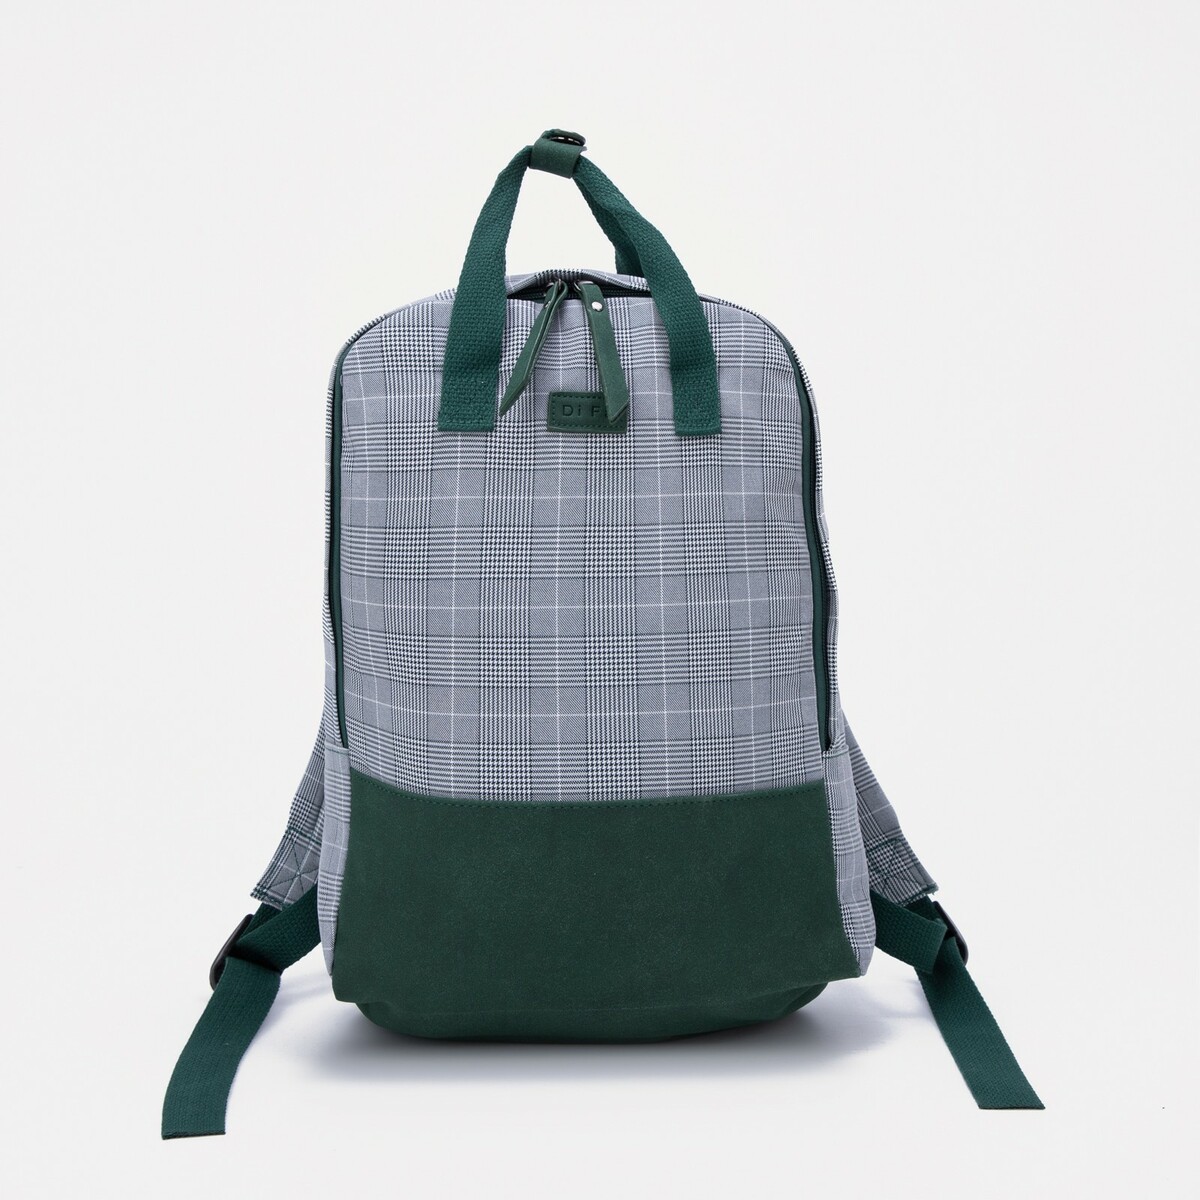 Сумка-рюкзак на молнии, 3 наружных кармана, цвет зелёный, No brand